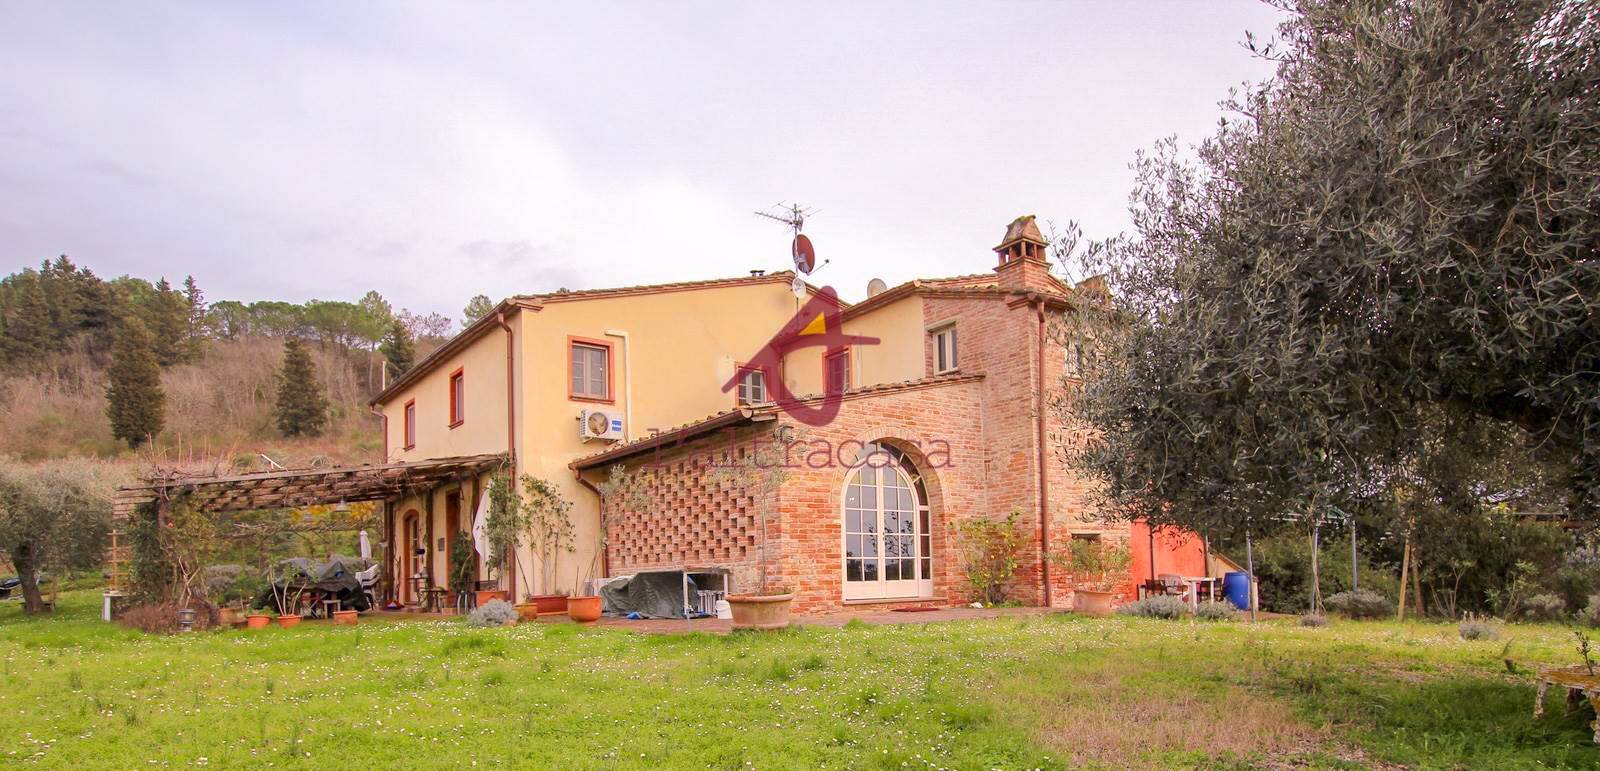 Rustico / Casale in vendita a Palaia, 12 locali, prezzo € 1.250.000 | PortaleAgenzieImmobiliari.it